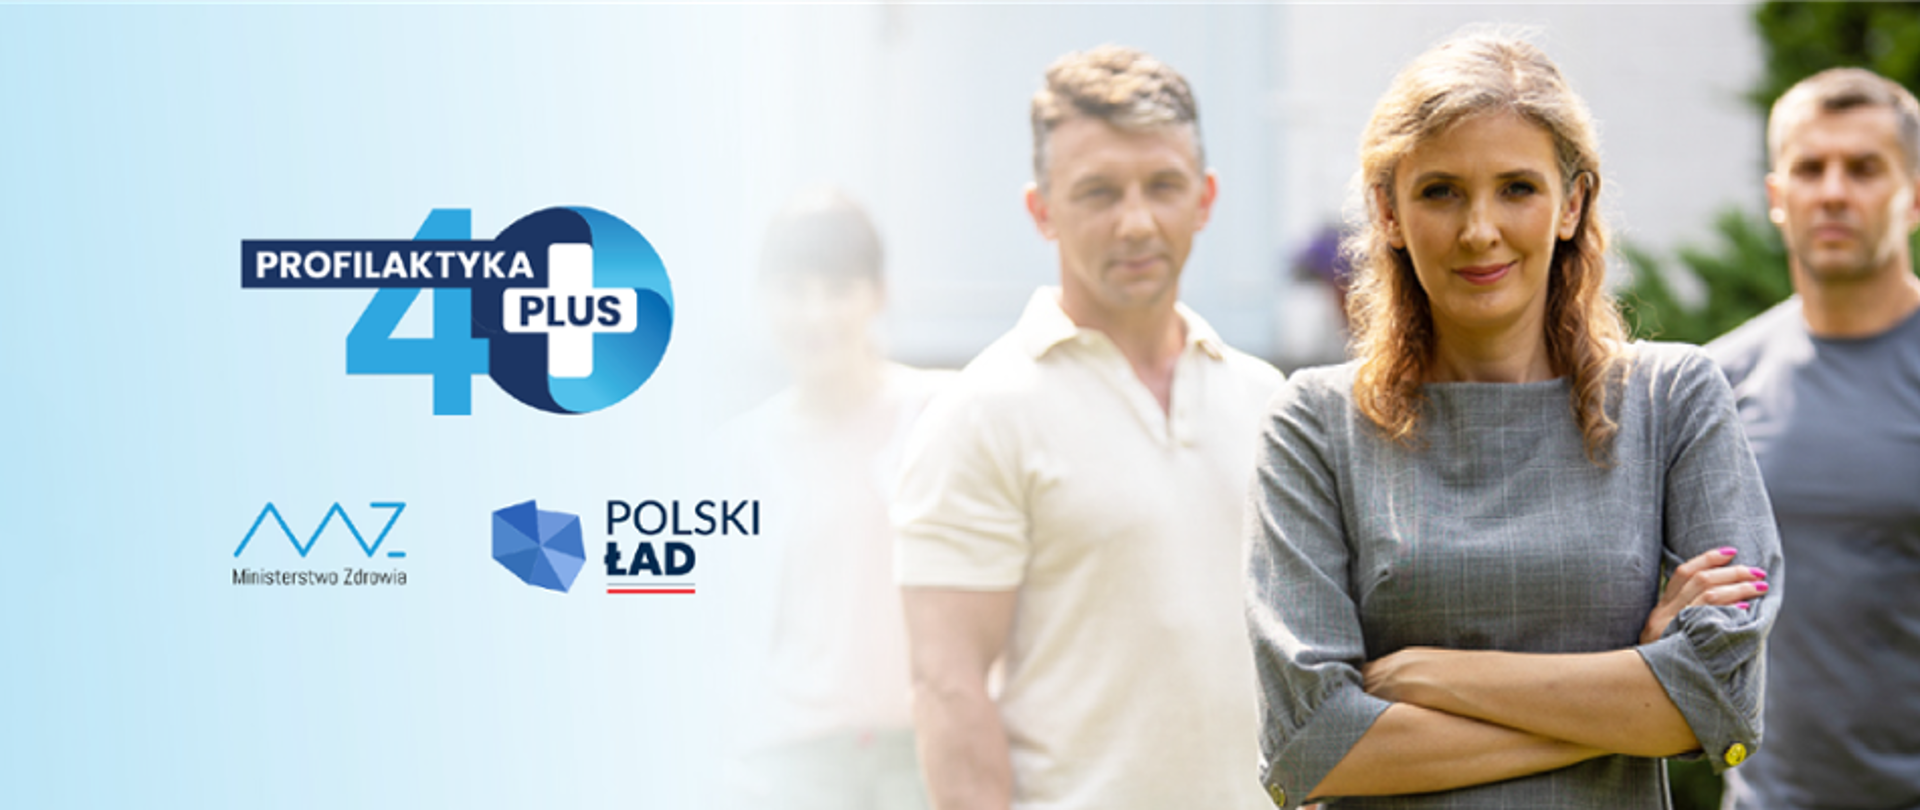 Grafika z tekstem: Profilaktyka 40 plus. Obok zdjęcie czworga ludzi w średnim wieku. Logo Ministerstwa Zdrowia i Polskiego Ładu.